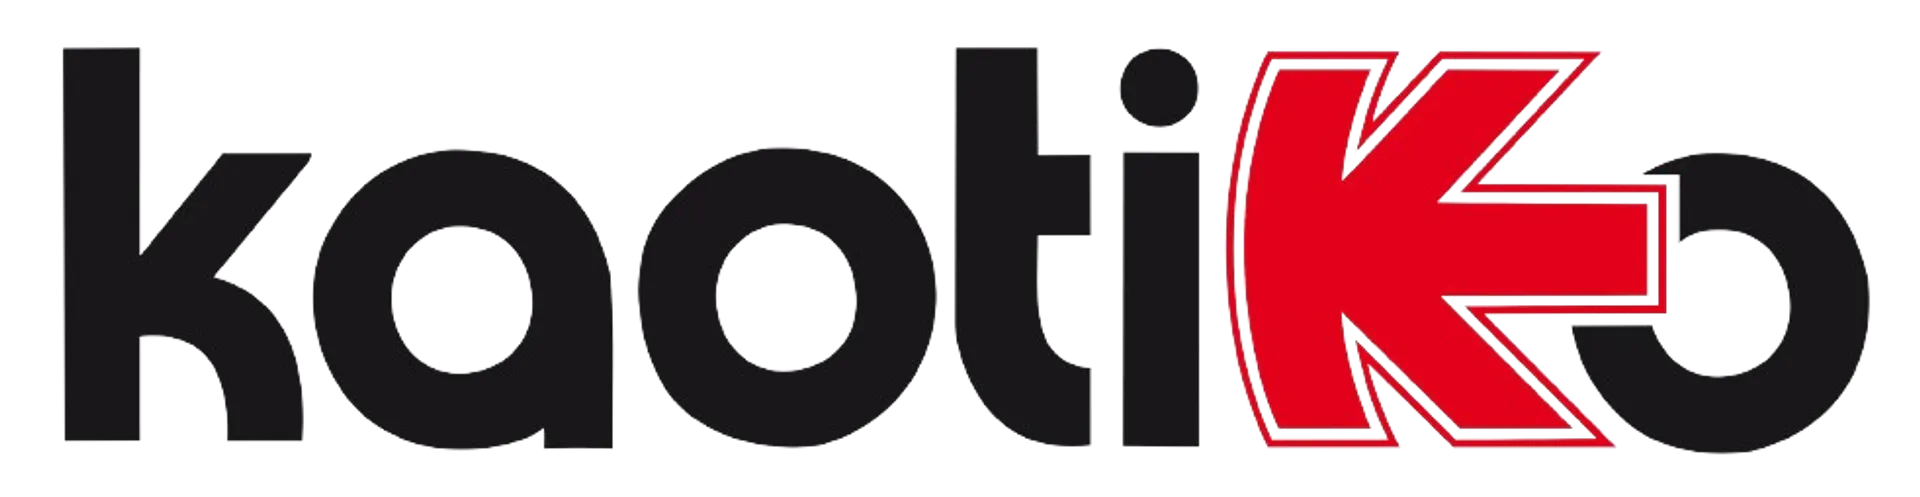 KAOTIKO logo de catálogo